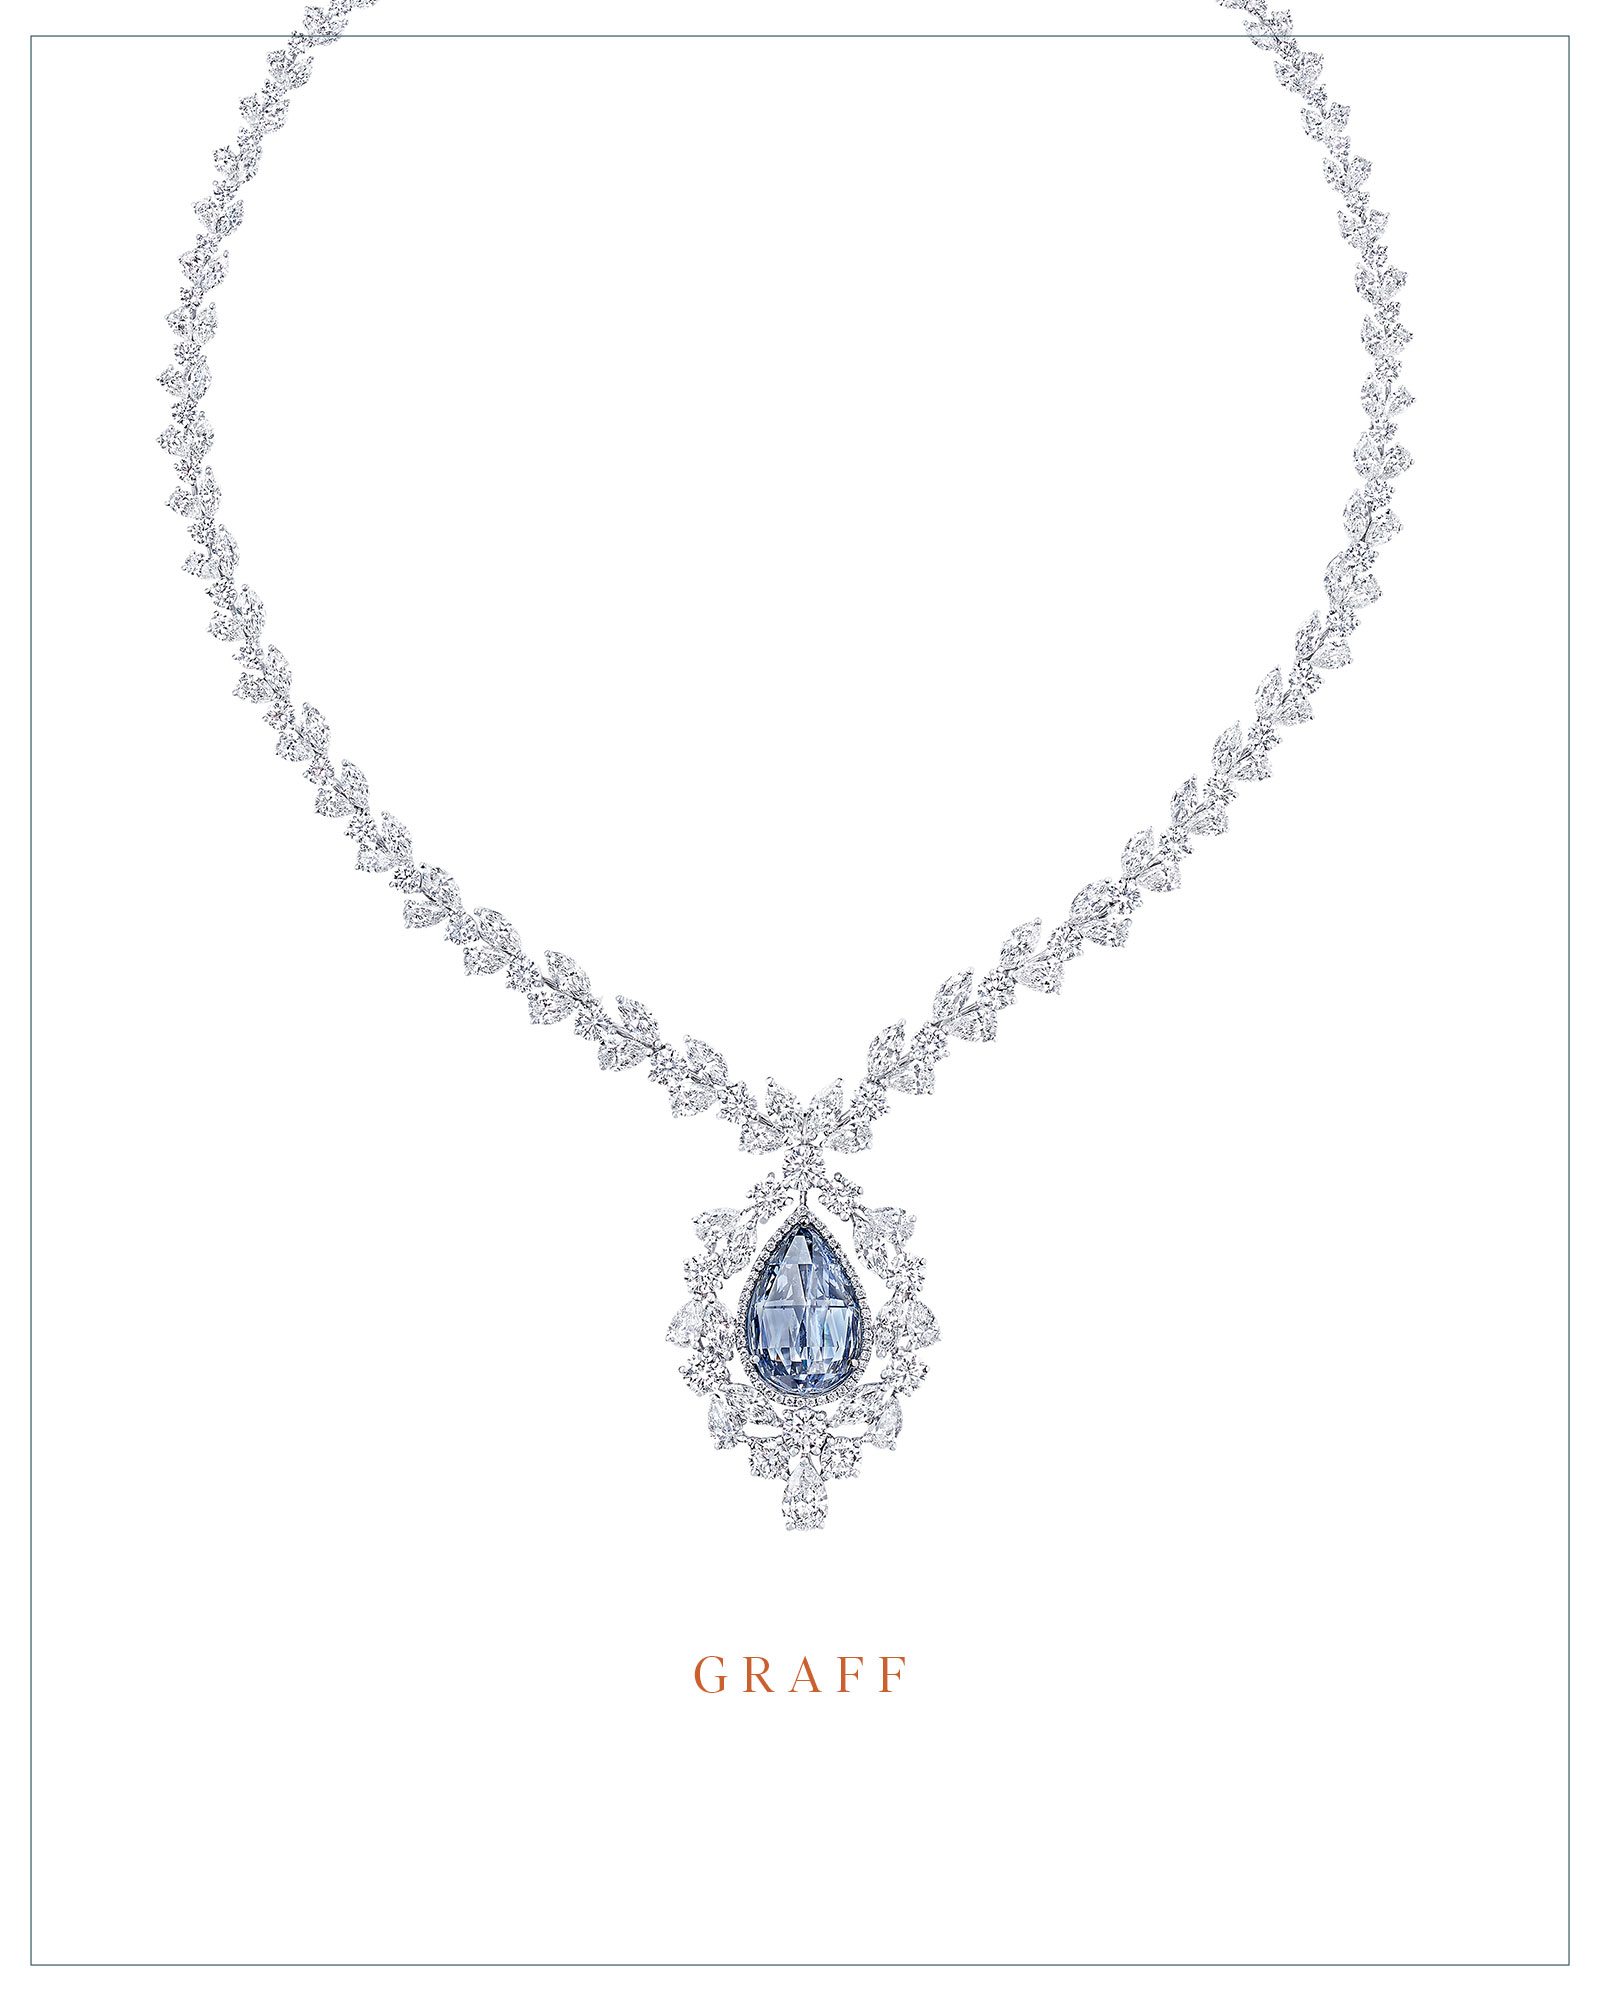 Graff necklace with a 10.47-carat Fancy Vivid blue briolette diamond